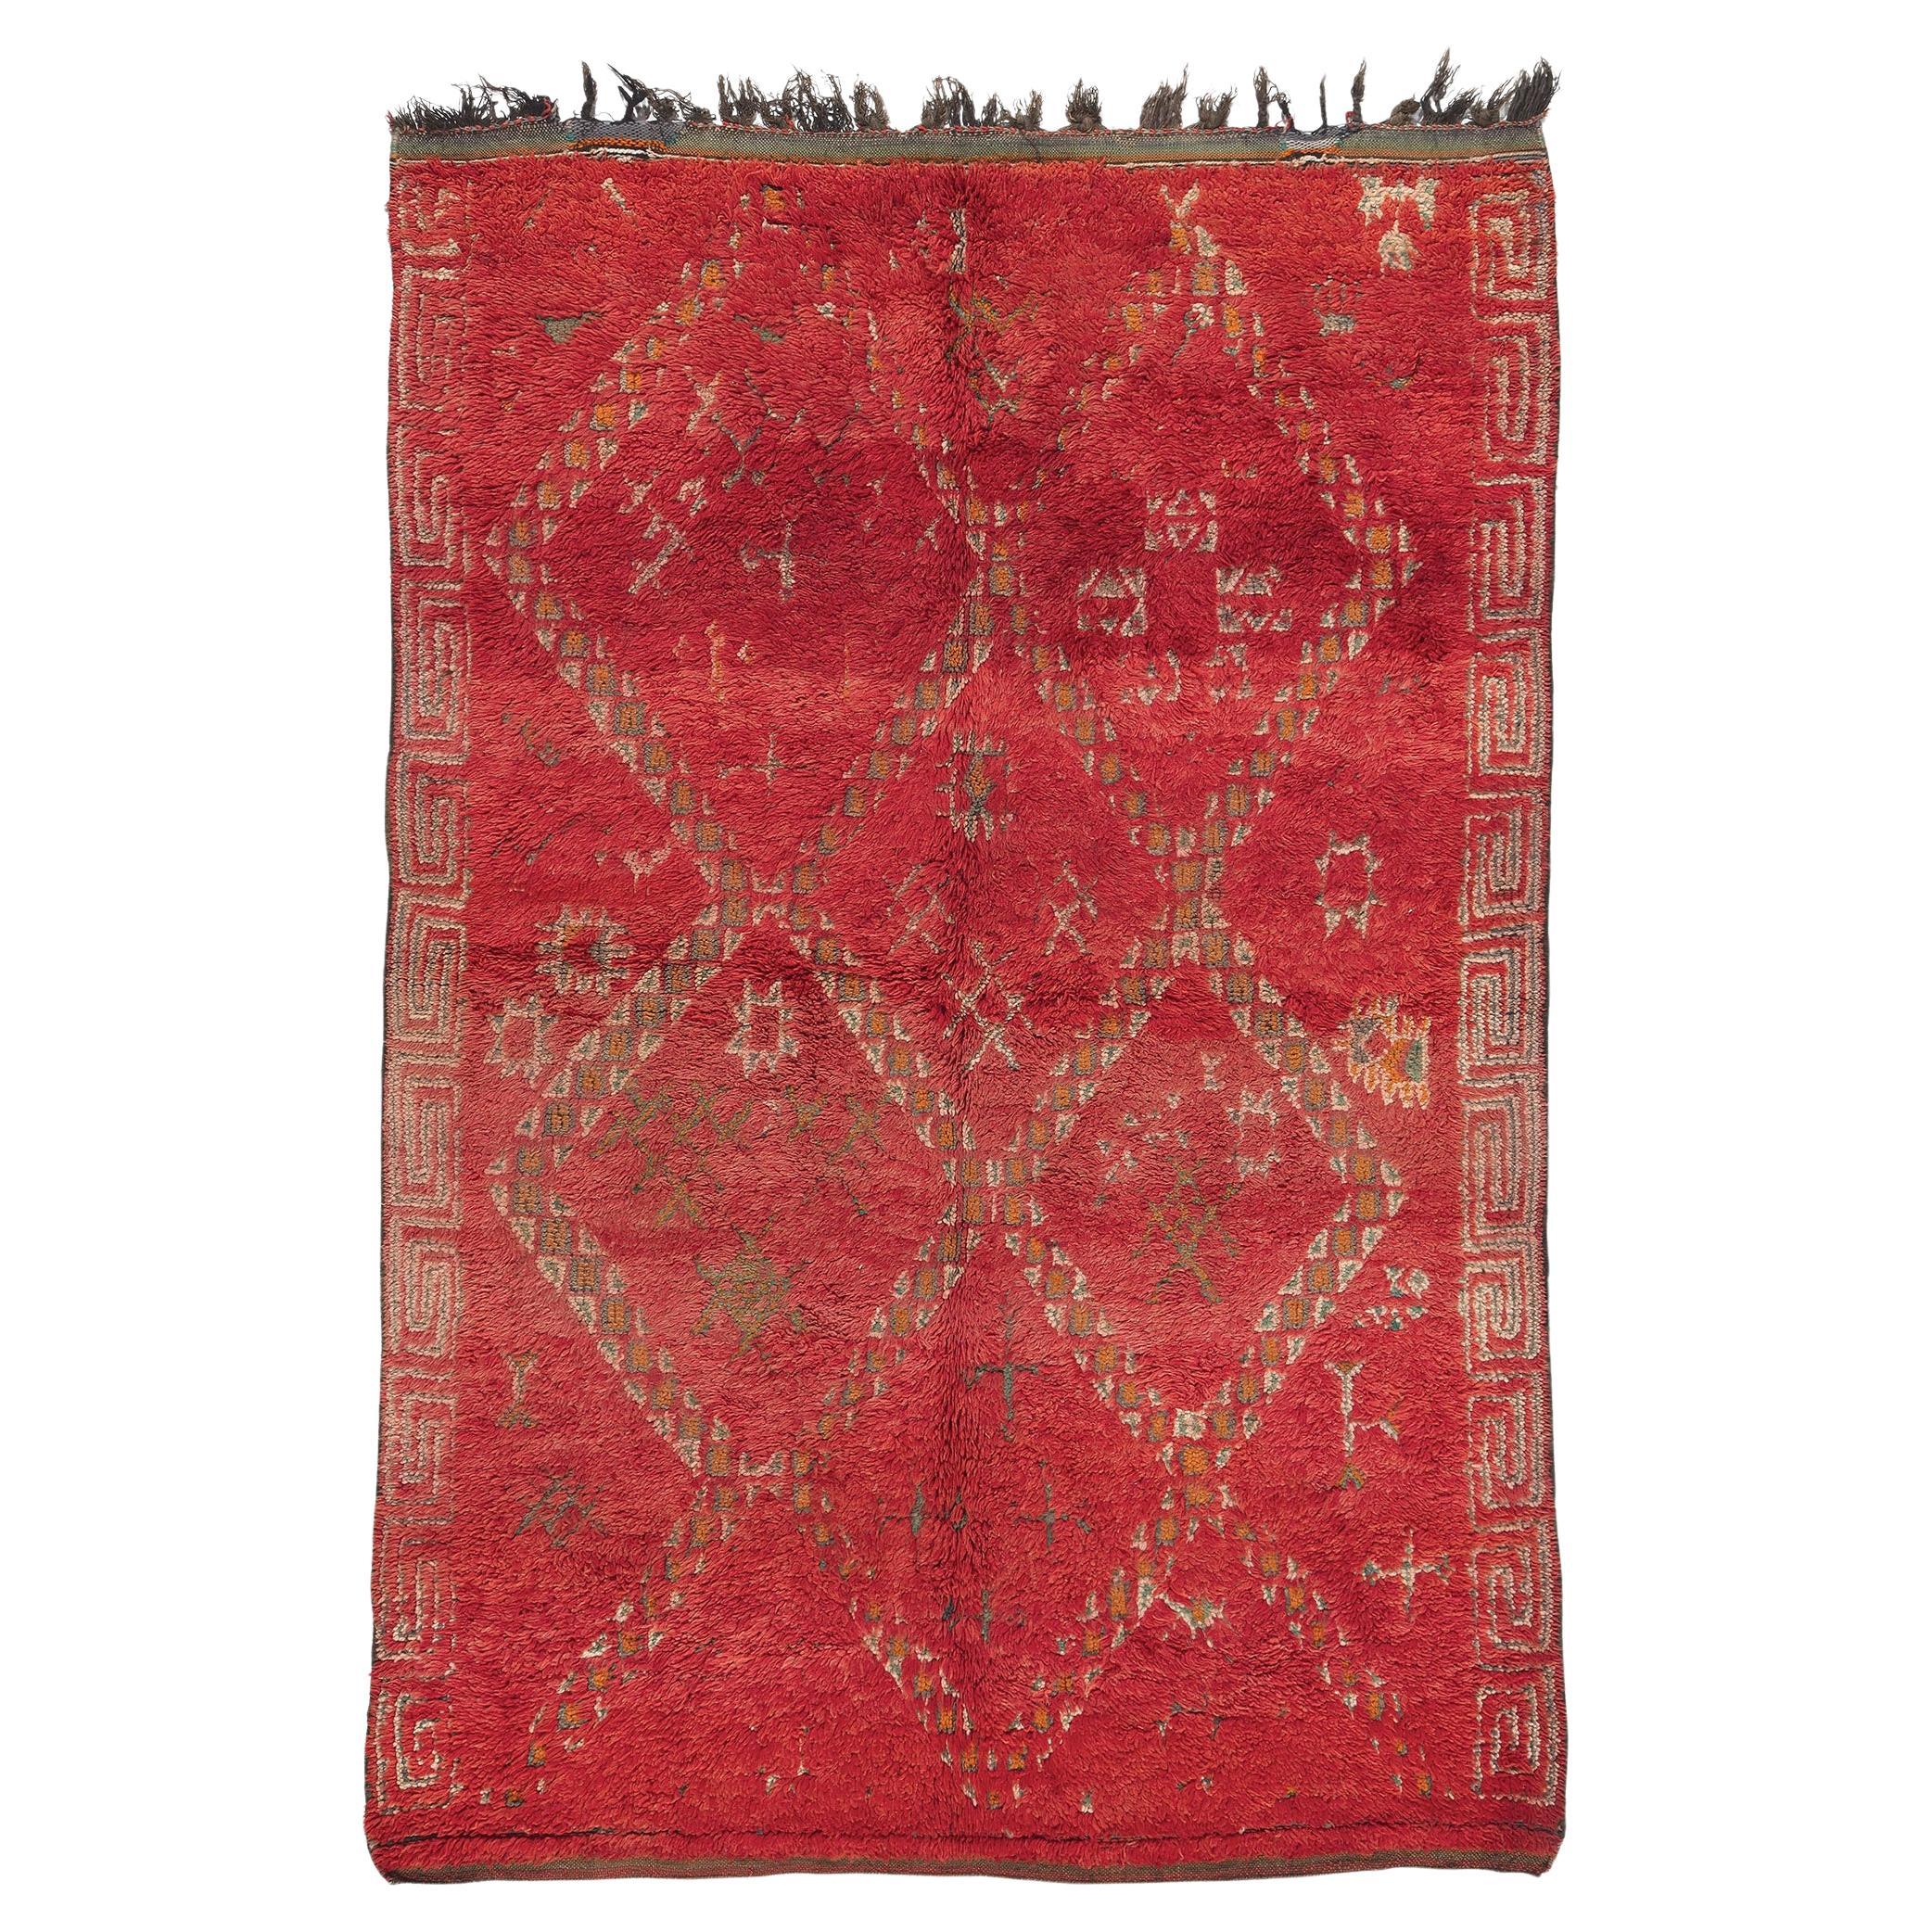 Vintage Red  Beni MGuild Moroccan Rug, Bold Boho Meets Midcentury Modern For Sale